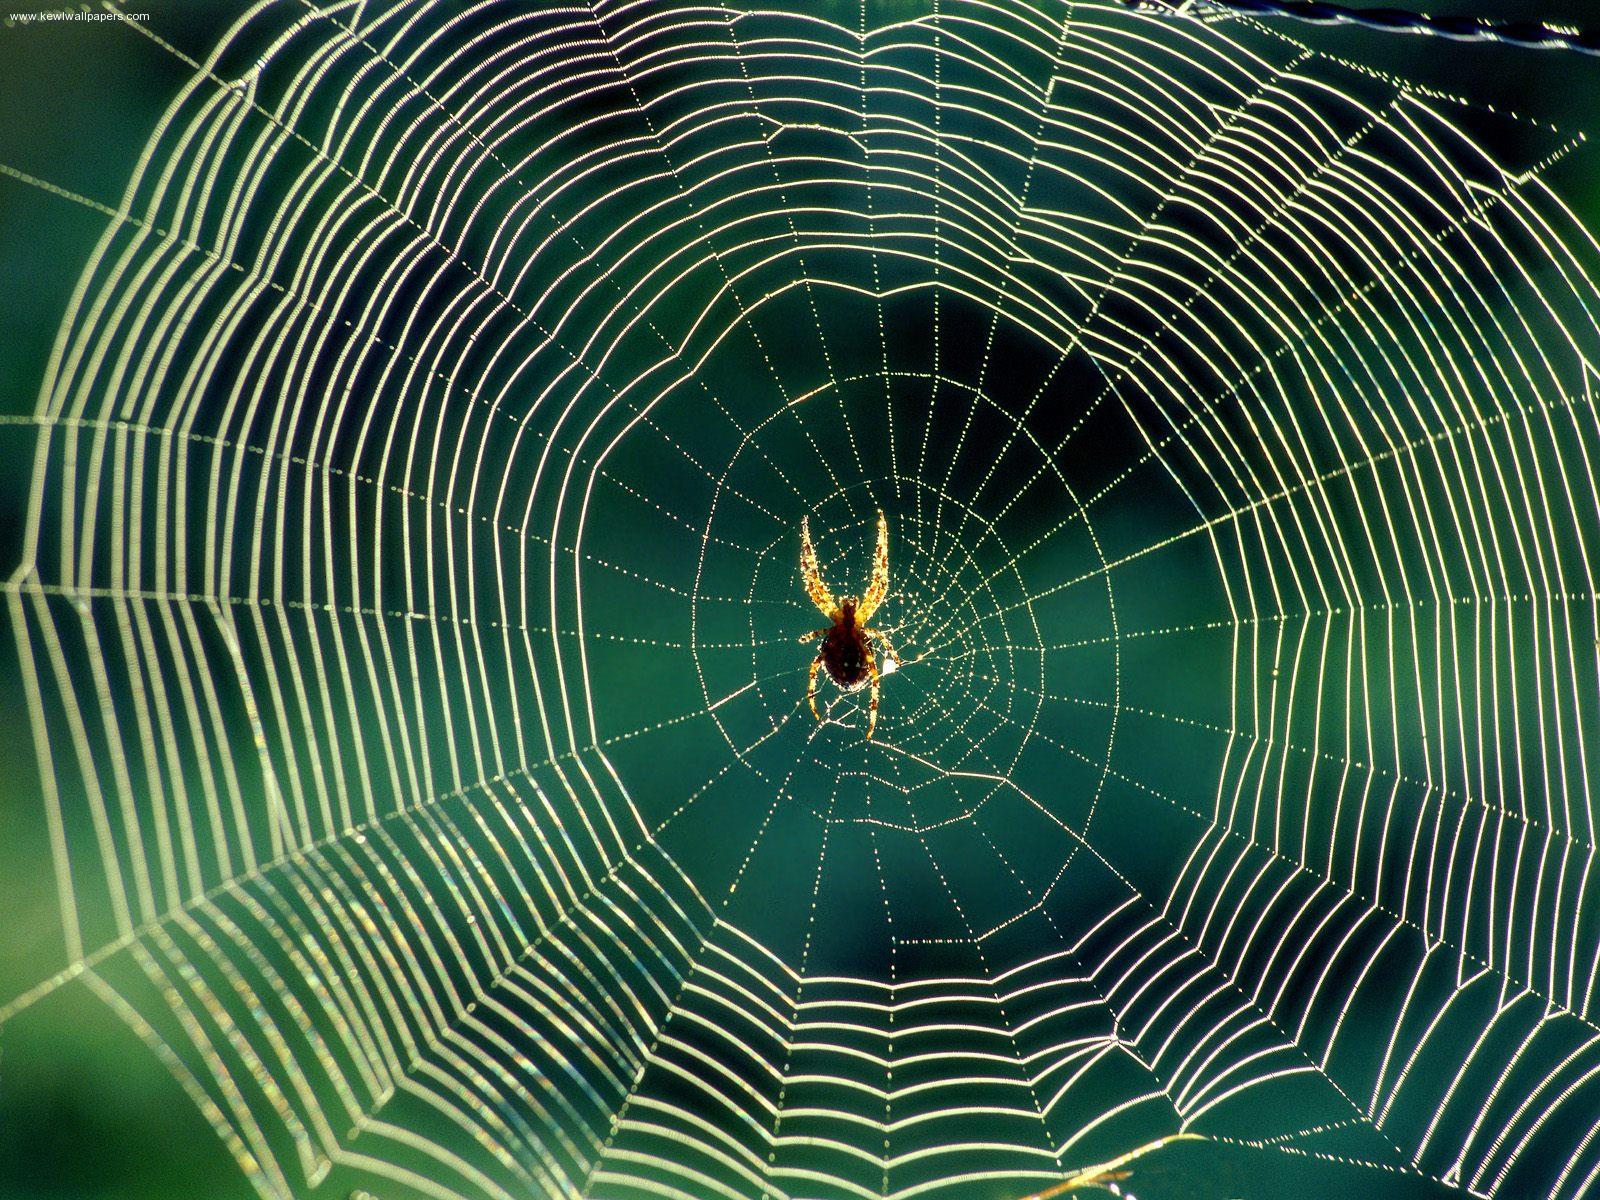 101 Proofs For God: #91 Spider Webs